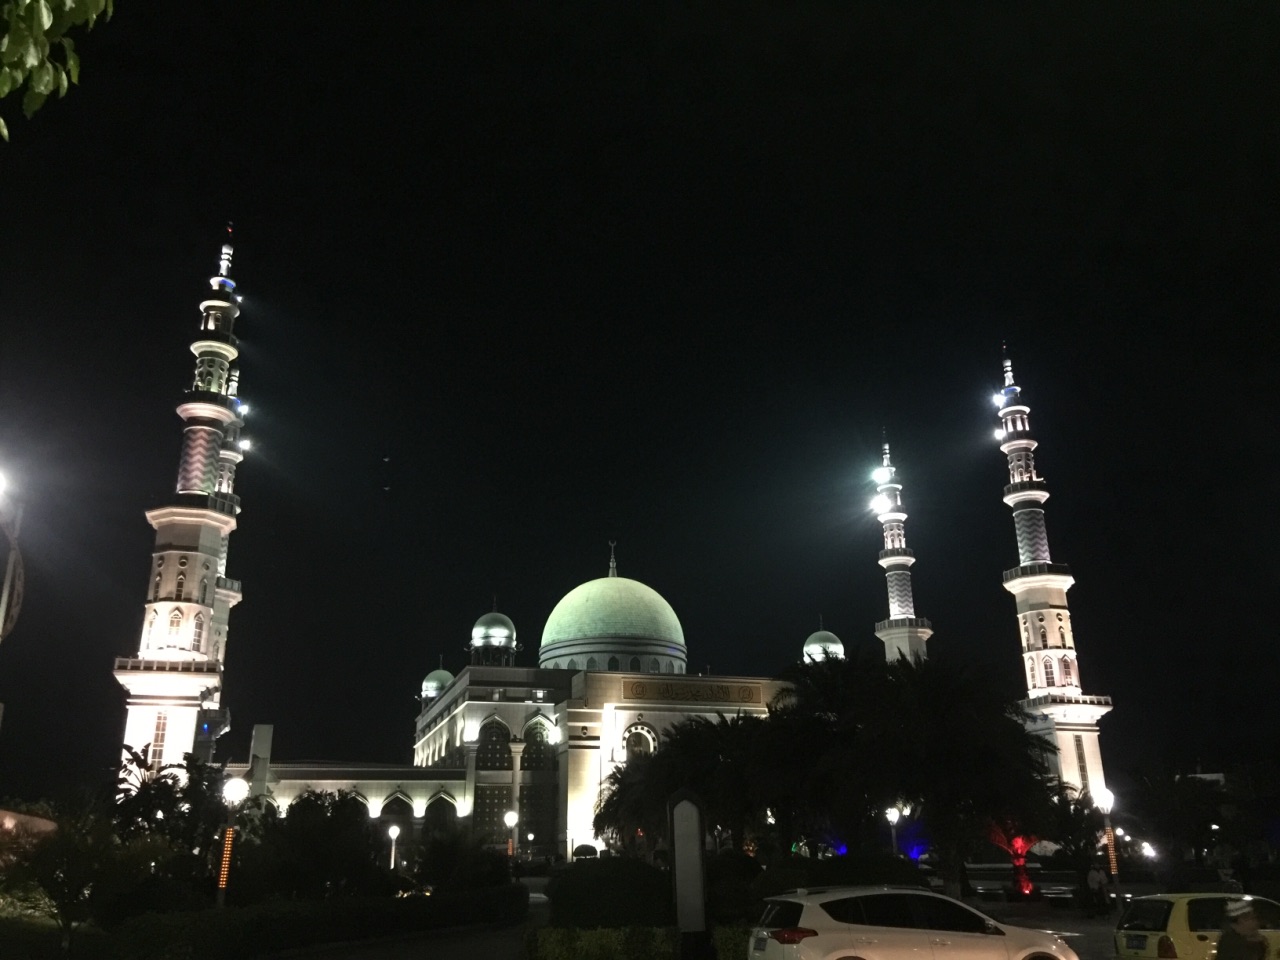 沙甸大清真寺夜景图片